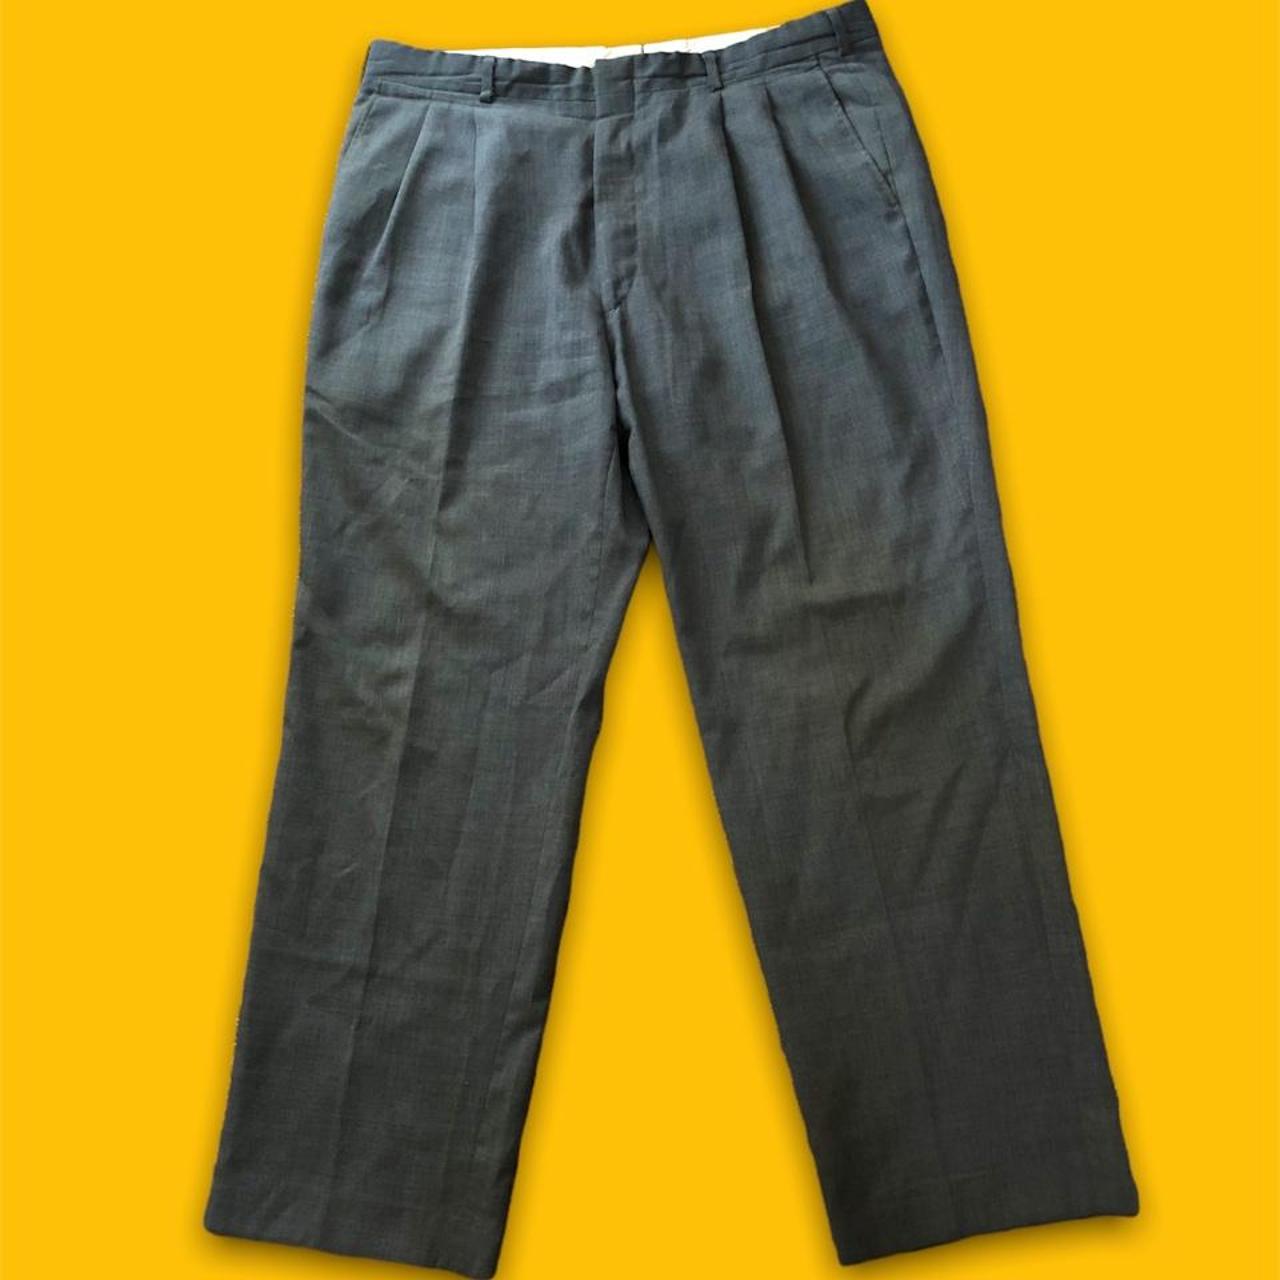 Product Image 1 - Vintage dress pants ! 1980s